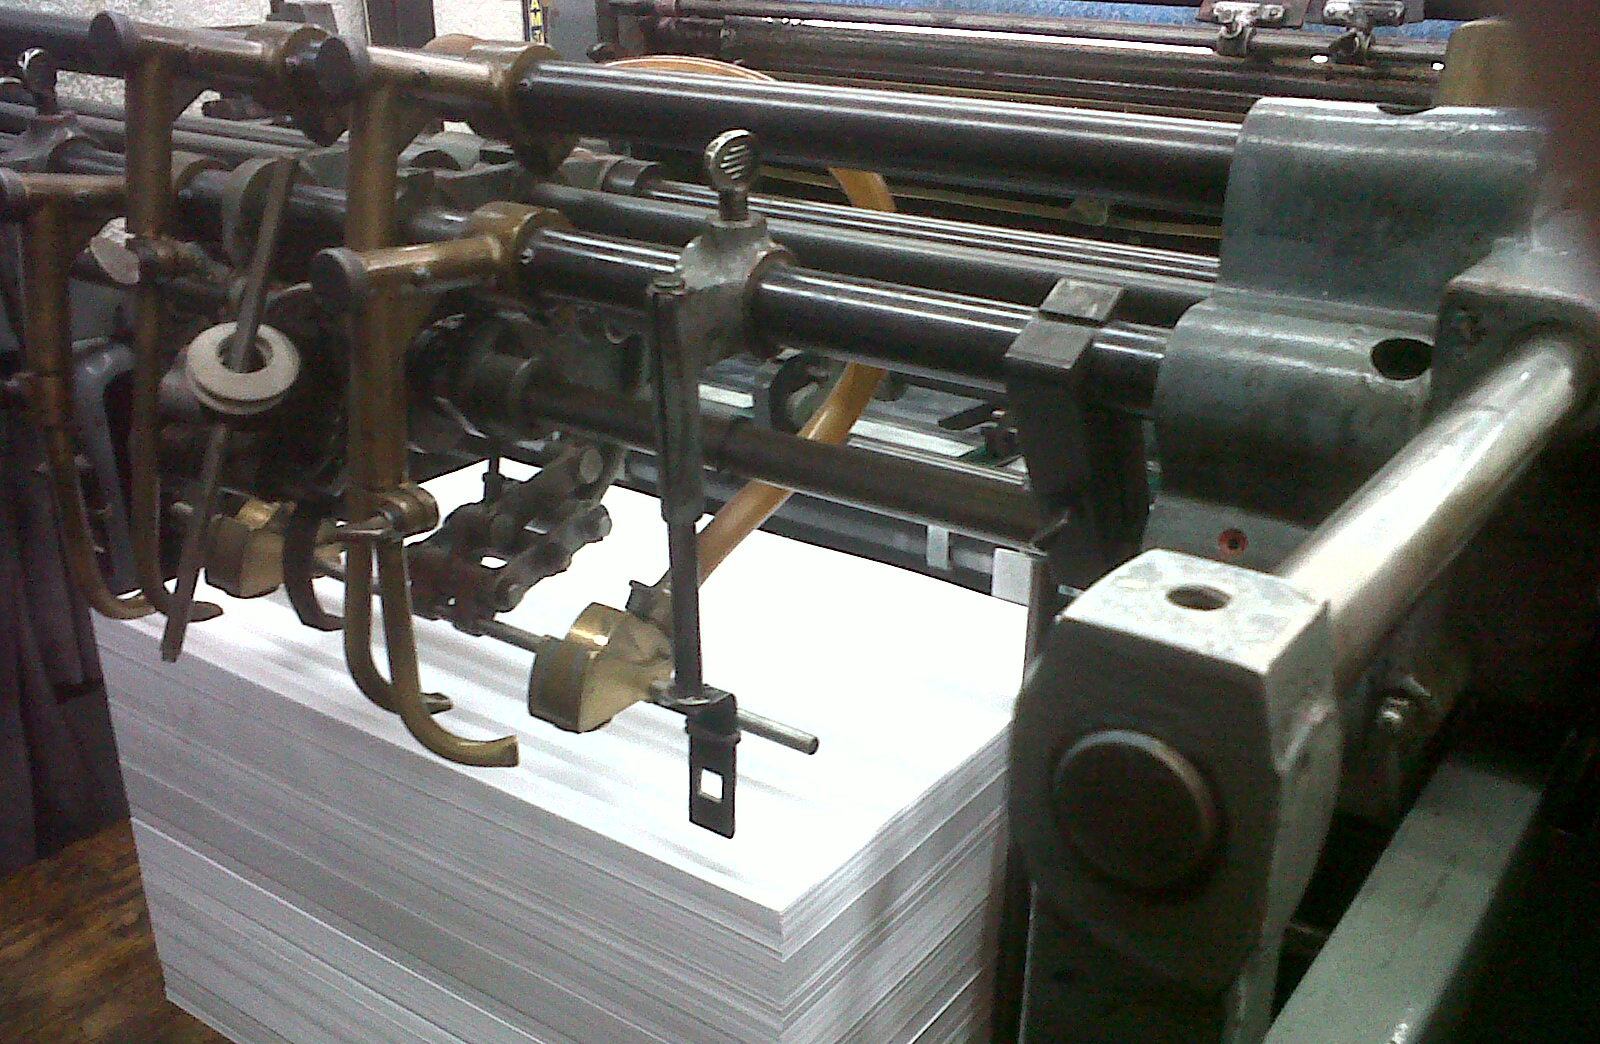 Impresión offset Esquema de una imprenta Offset La impresión offset (a menudo castellanizado como ófset, proveniente del del inglés offset: indirecto) es un método de reproducción de documentos e